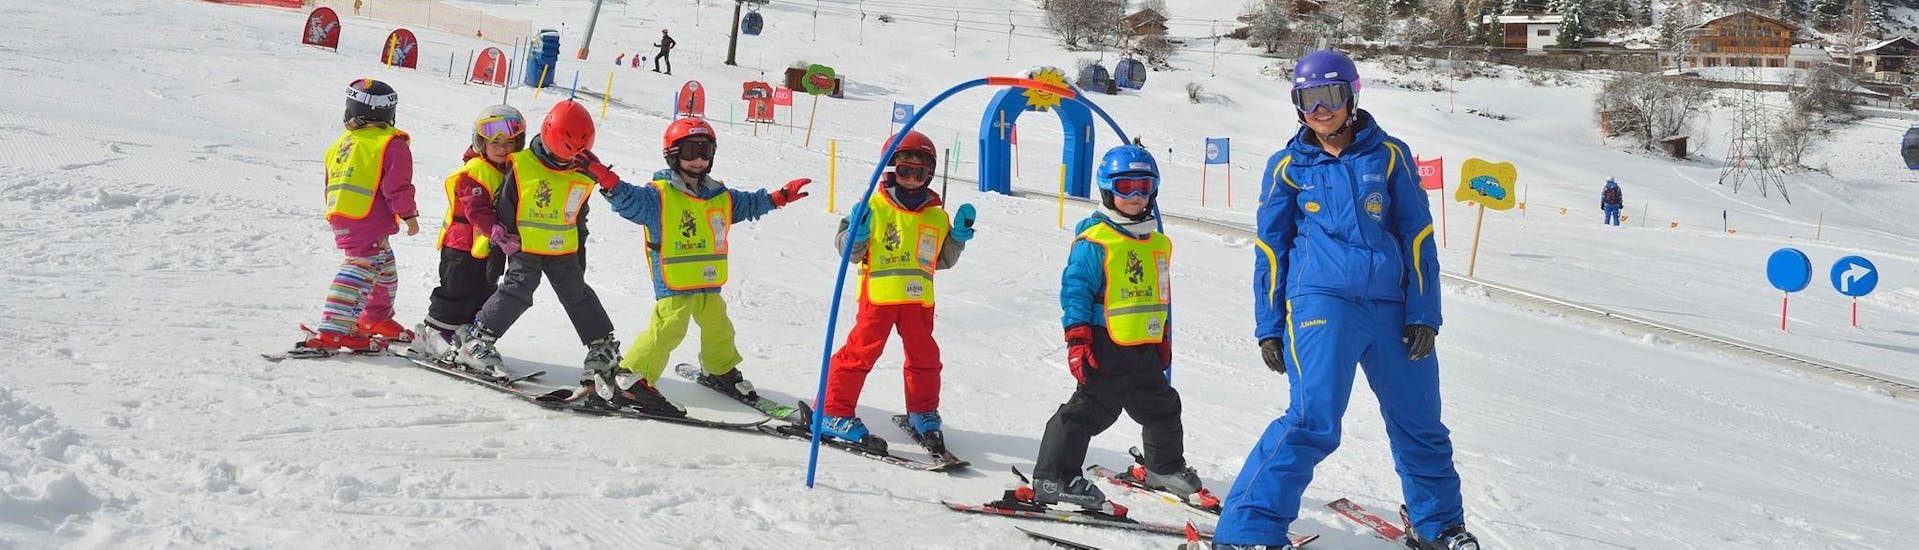 Cours de ski Enfants (5-12 ans) pour Tous Niveaux.